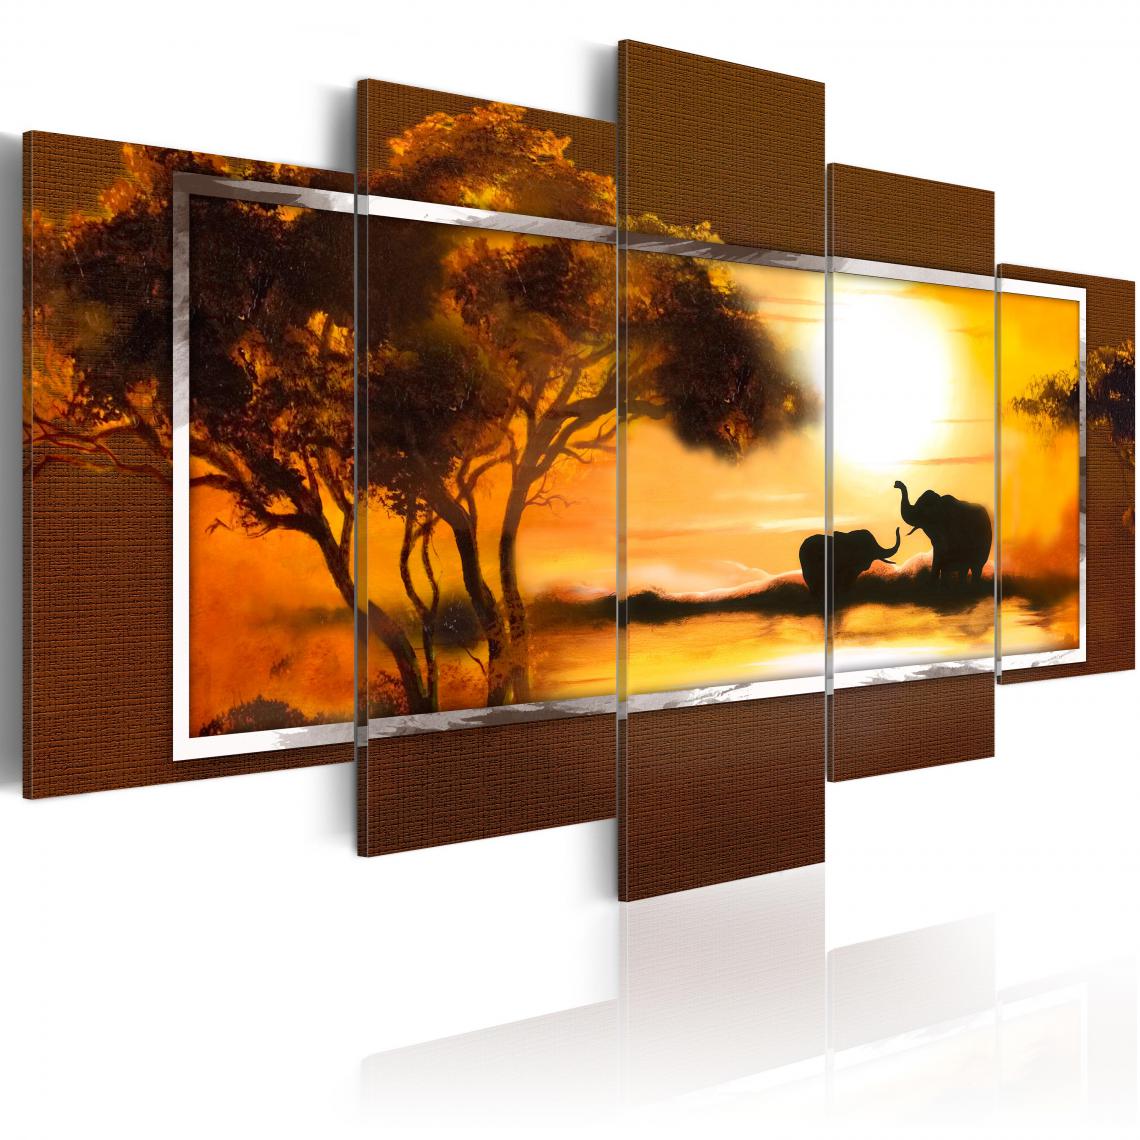 Decoshop26 - Tableau sur toile en 5 panneaux décoration murale image imprimée cadre en bois à suspendre Rendez-vous à la Savane 200x100 cm 11_0007684 - Tableaux, peintures